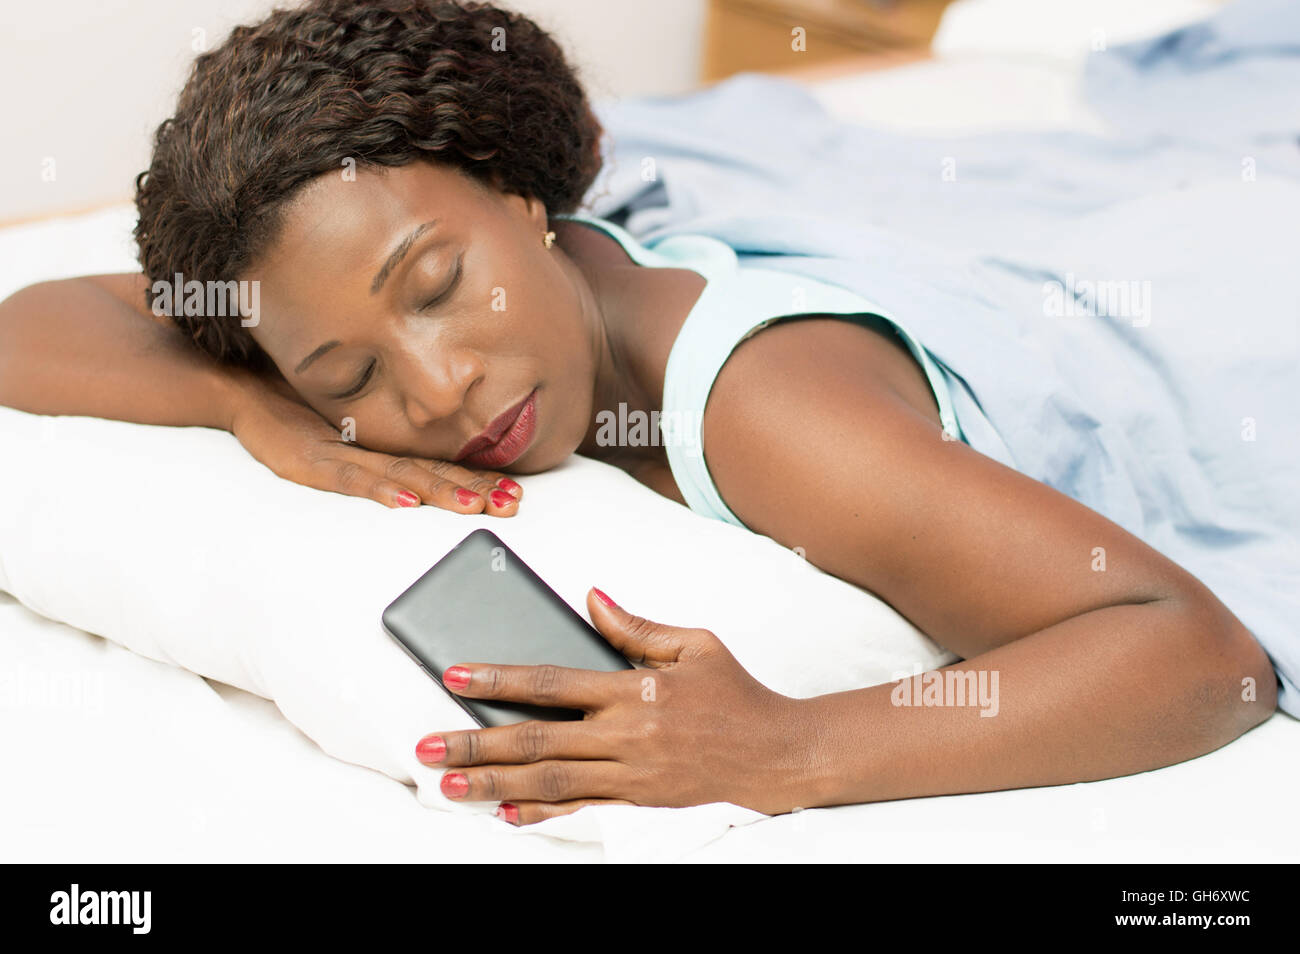 Belle femme dormir dans le lit avec son téléphone portable dans sa main Banque D'Images